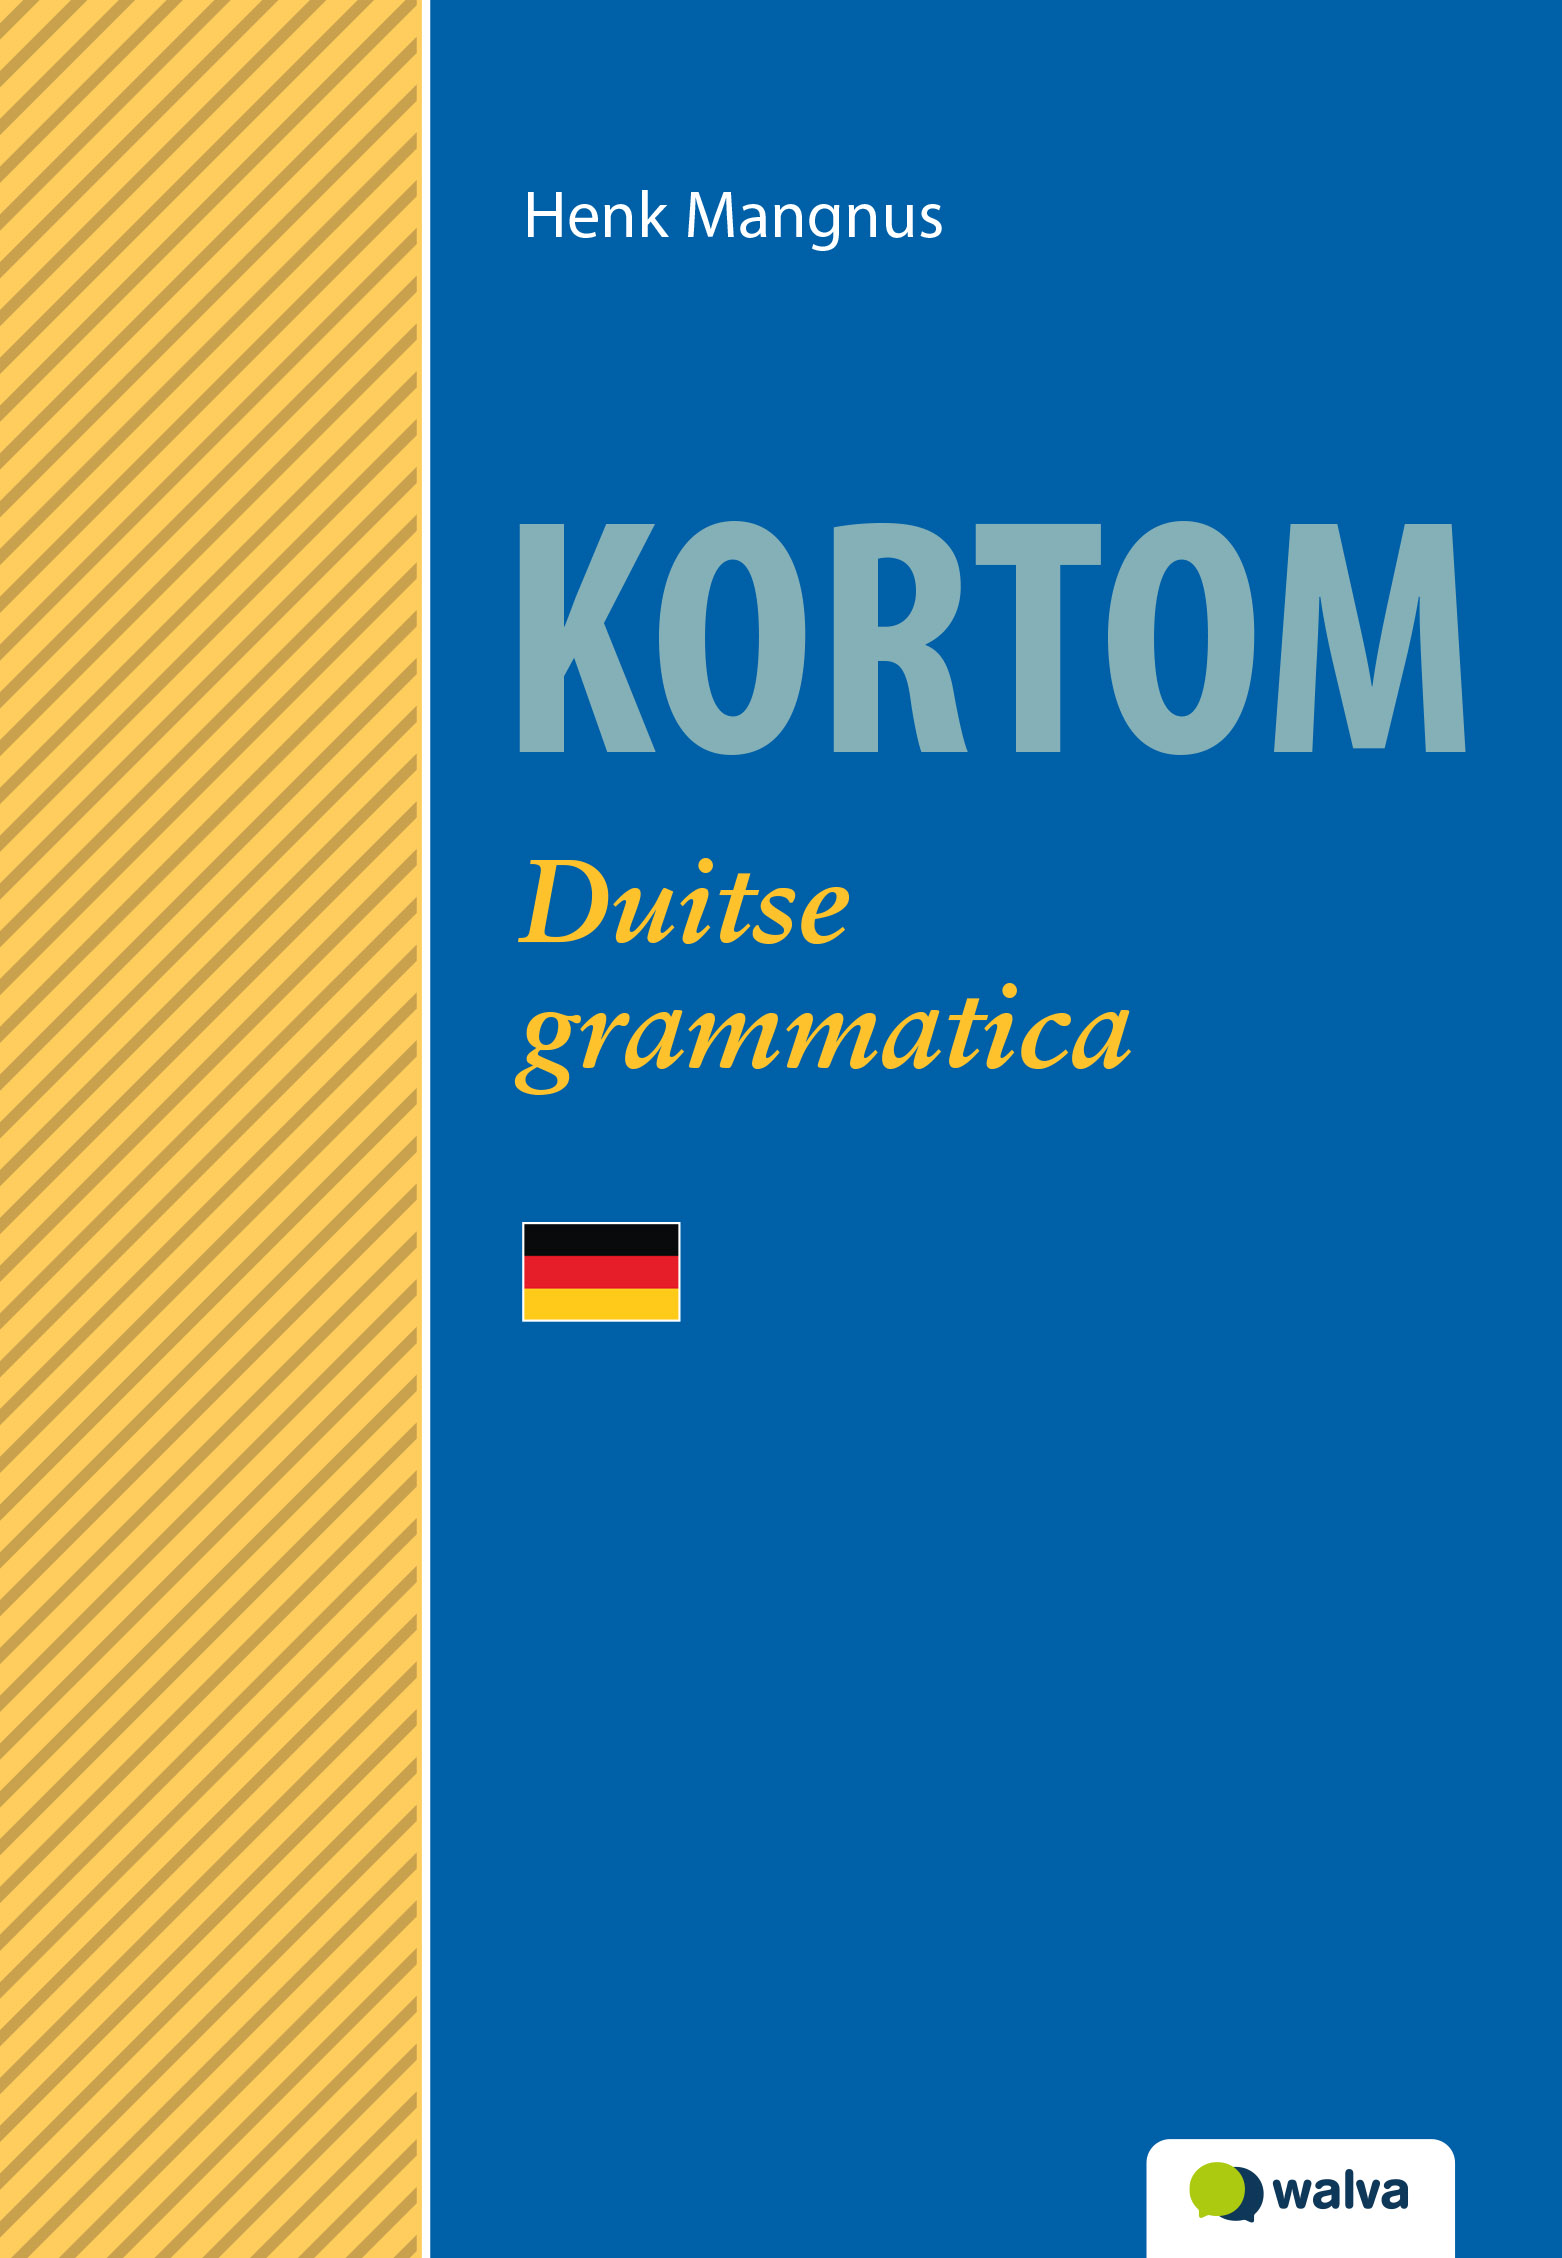 WDXKGR001 Kortom Duitse grammatica, beoordelingsexemplaar